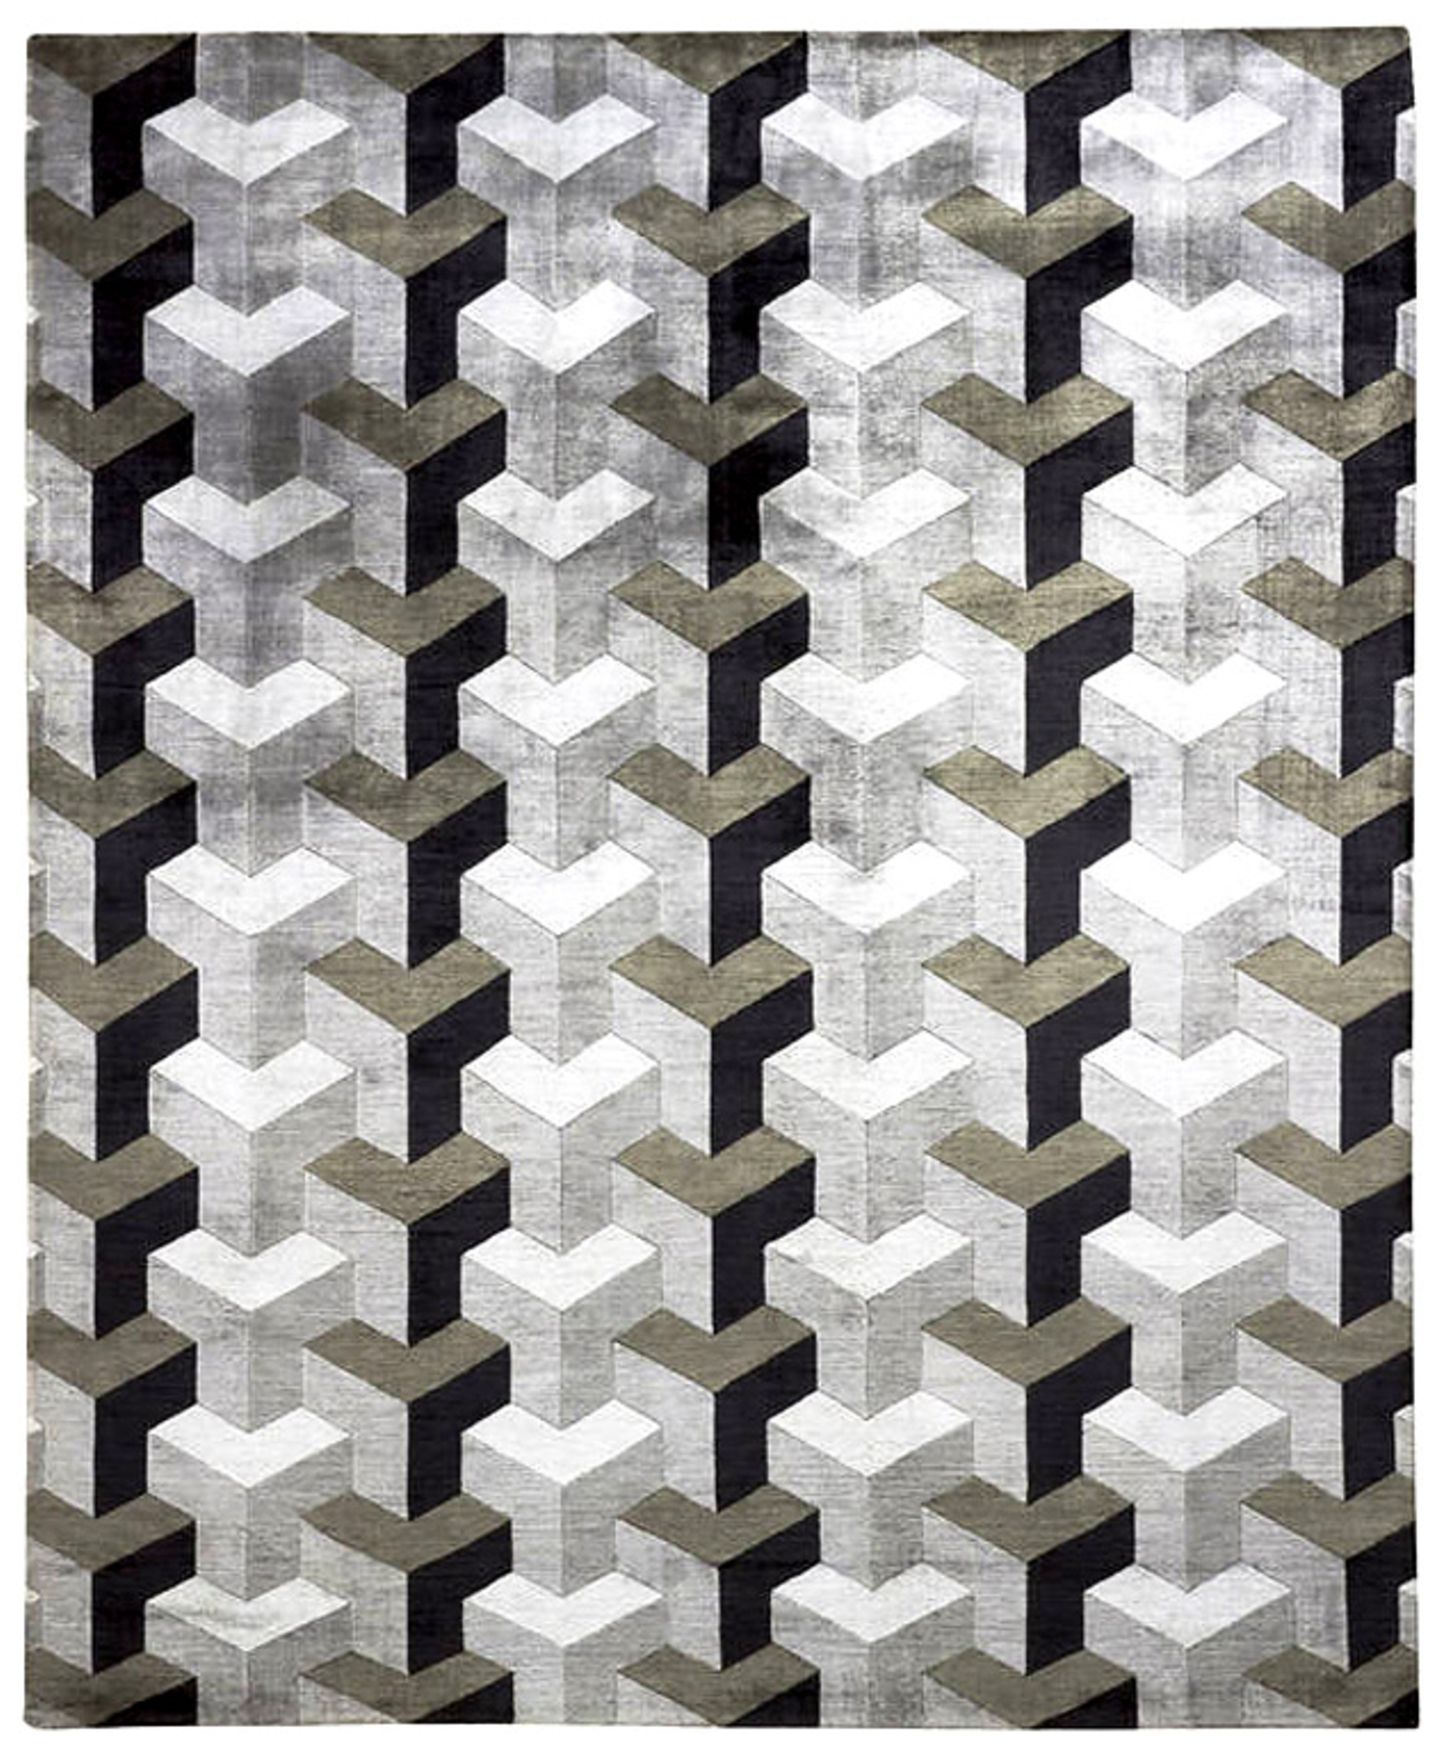 Ein Verner-Panton-Klassiker: Teppich "Ypsilon" von Designercarpets